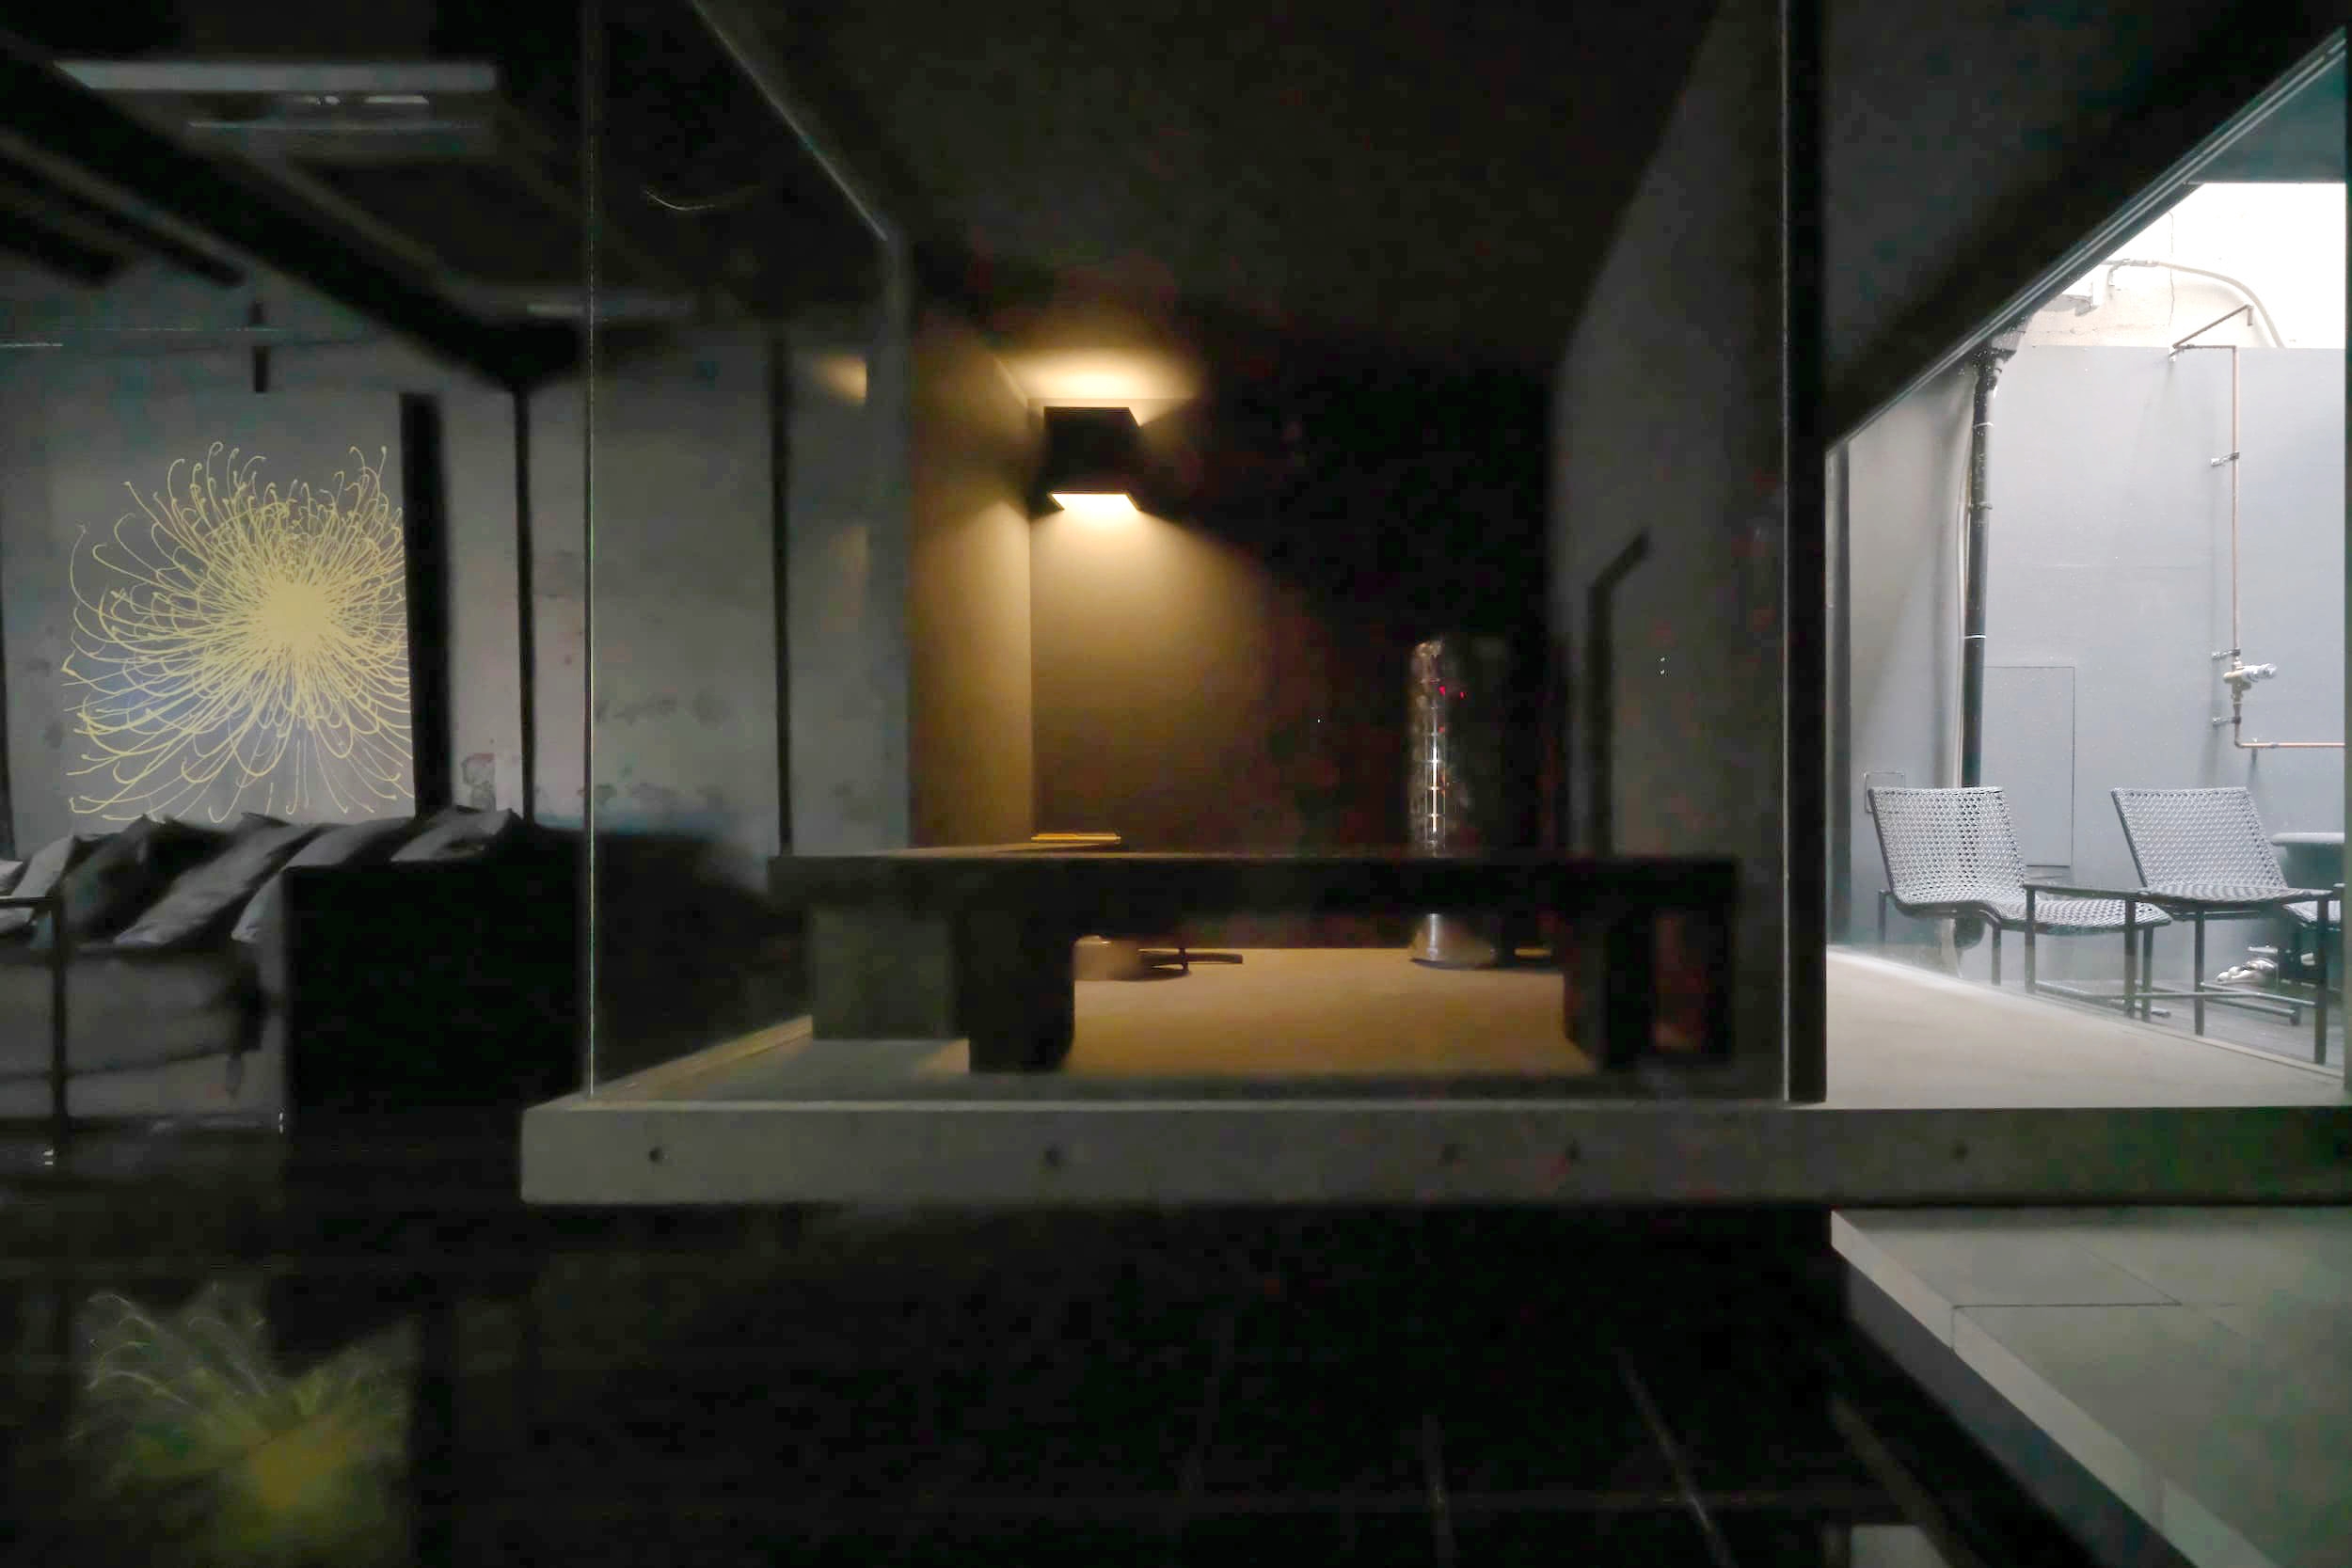 東日本橋のサウナ付き宿泊施設。かつては民泊として運営しており、ガラスの茶室のようなスペースをサウナに改修、写真右側に水風呂、外気浴スペースを設けた